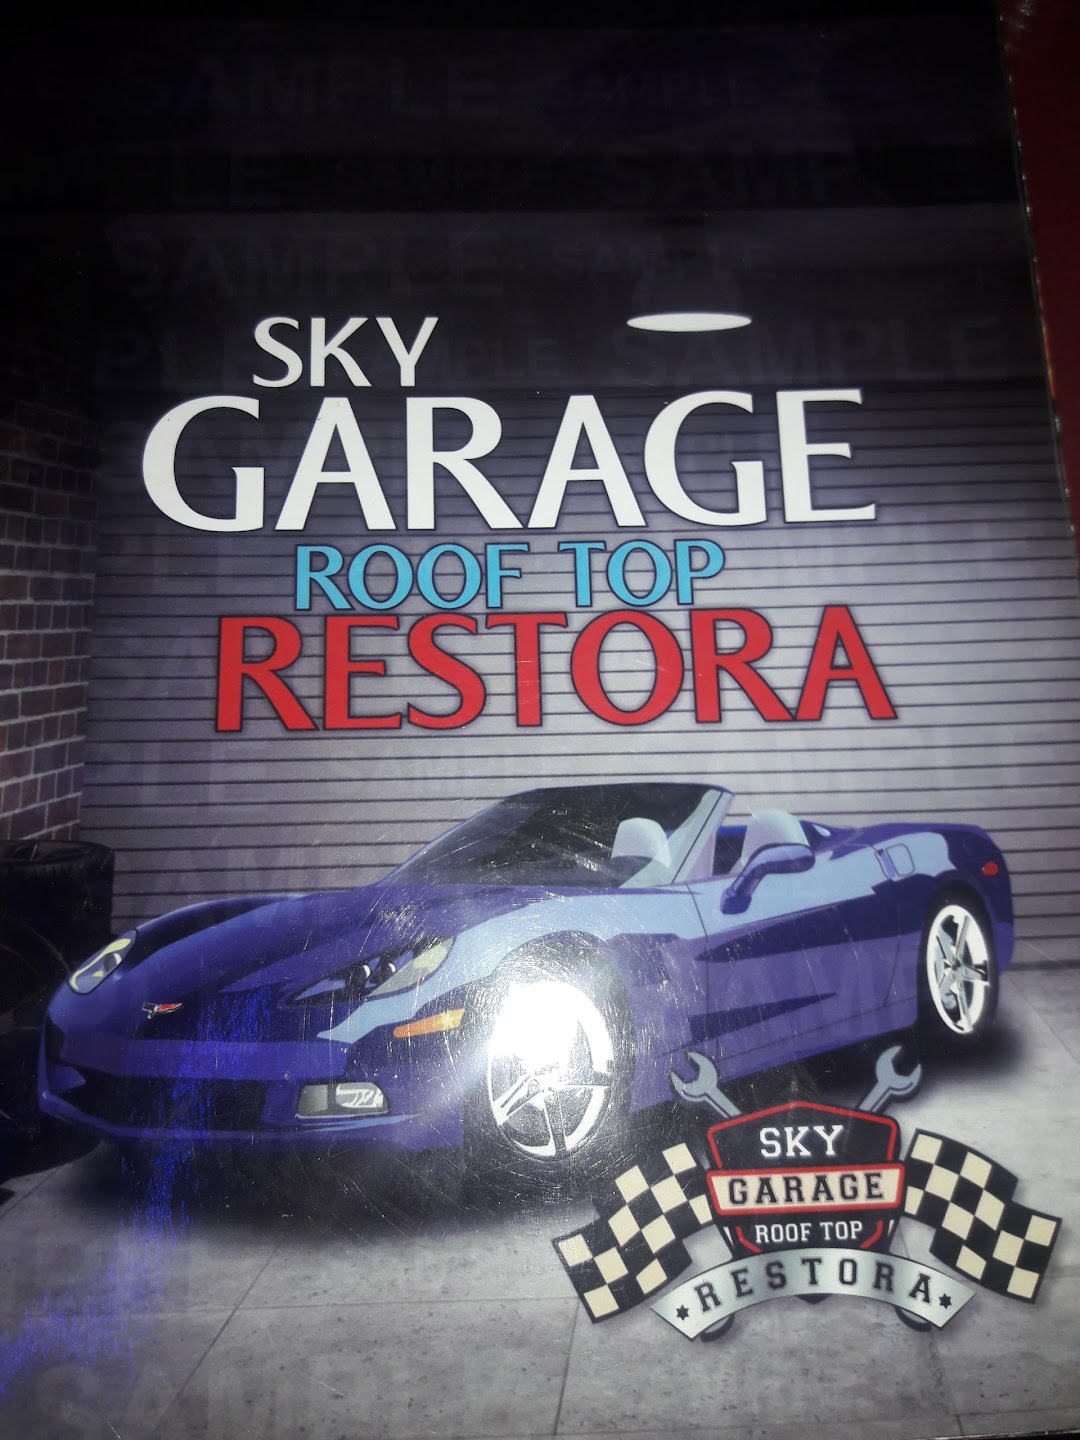 SKY Garage, Roof top Restora...